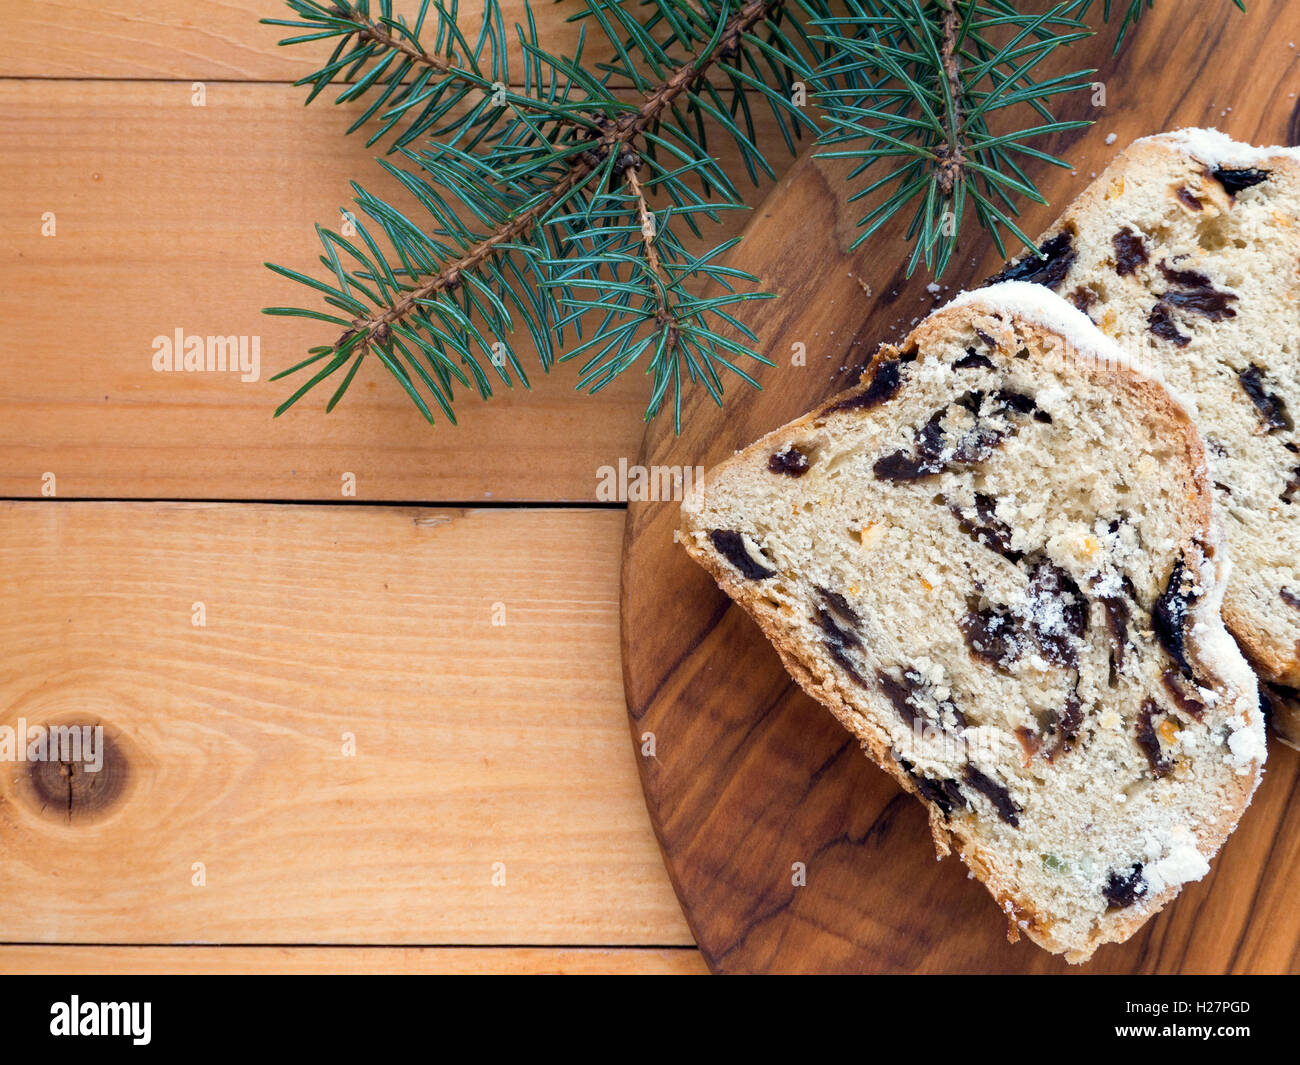 Gâteau de Noël allemand Stollen texturé sur la planche de bois et de branches d'épinette bleue sur les planches en bois Banque D'Images